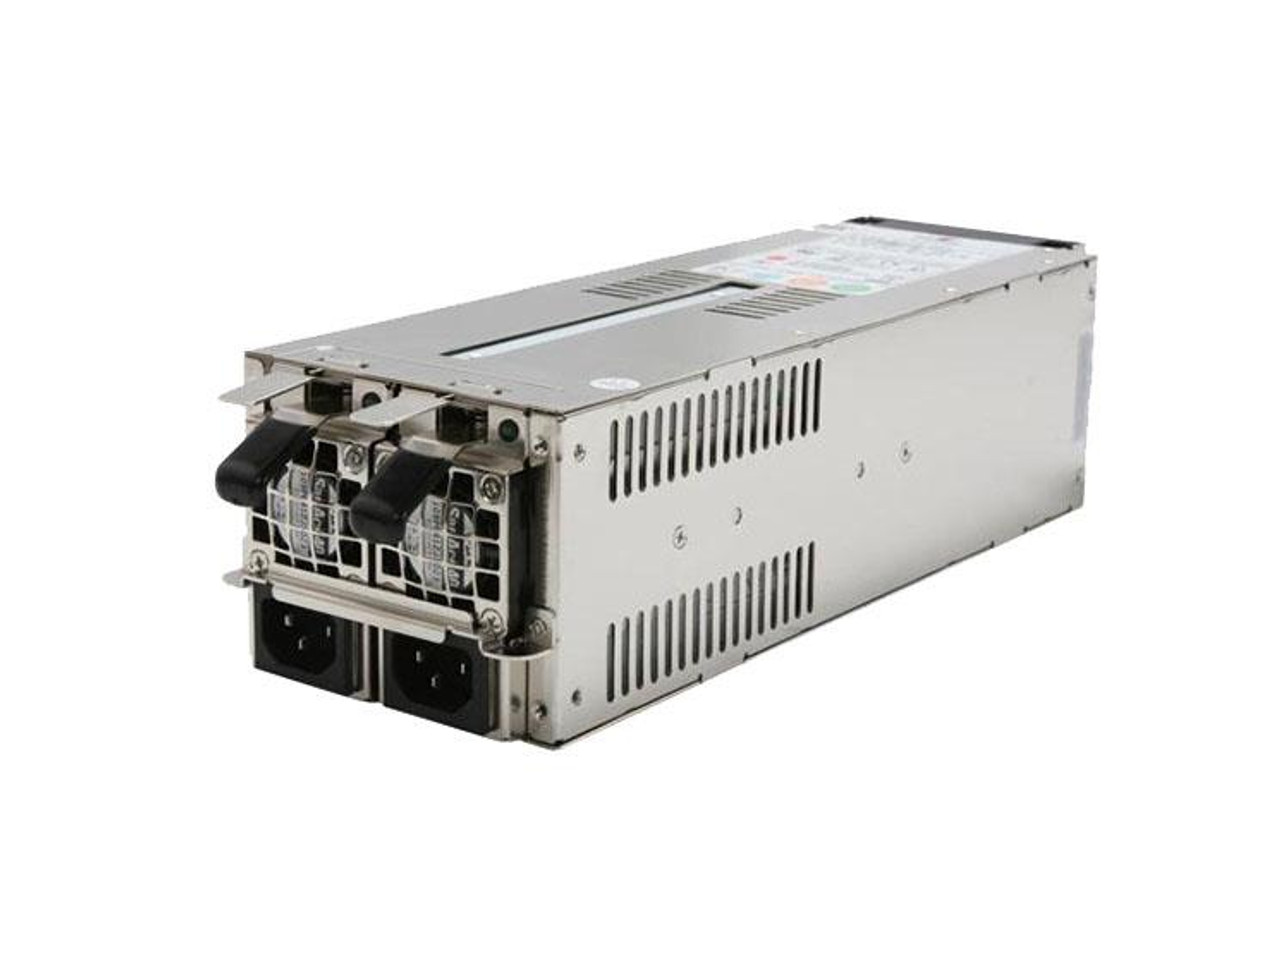 R2G-6300P Emacs 300 Watts redundant Power Supply